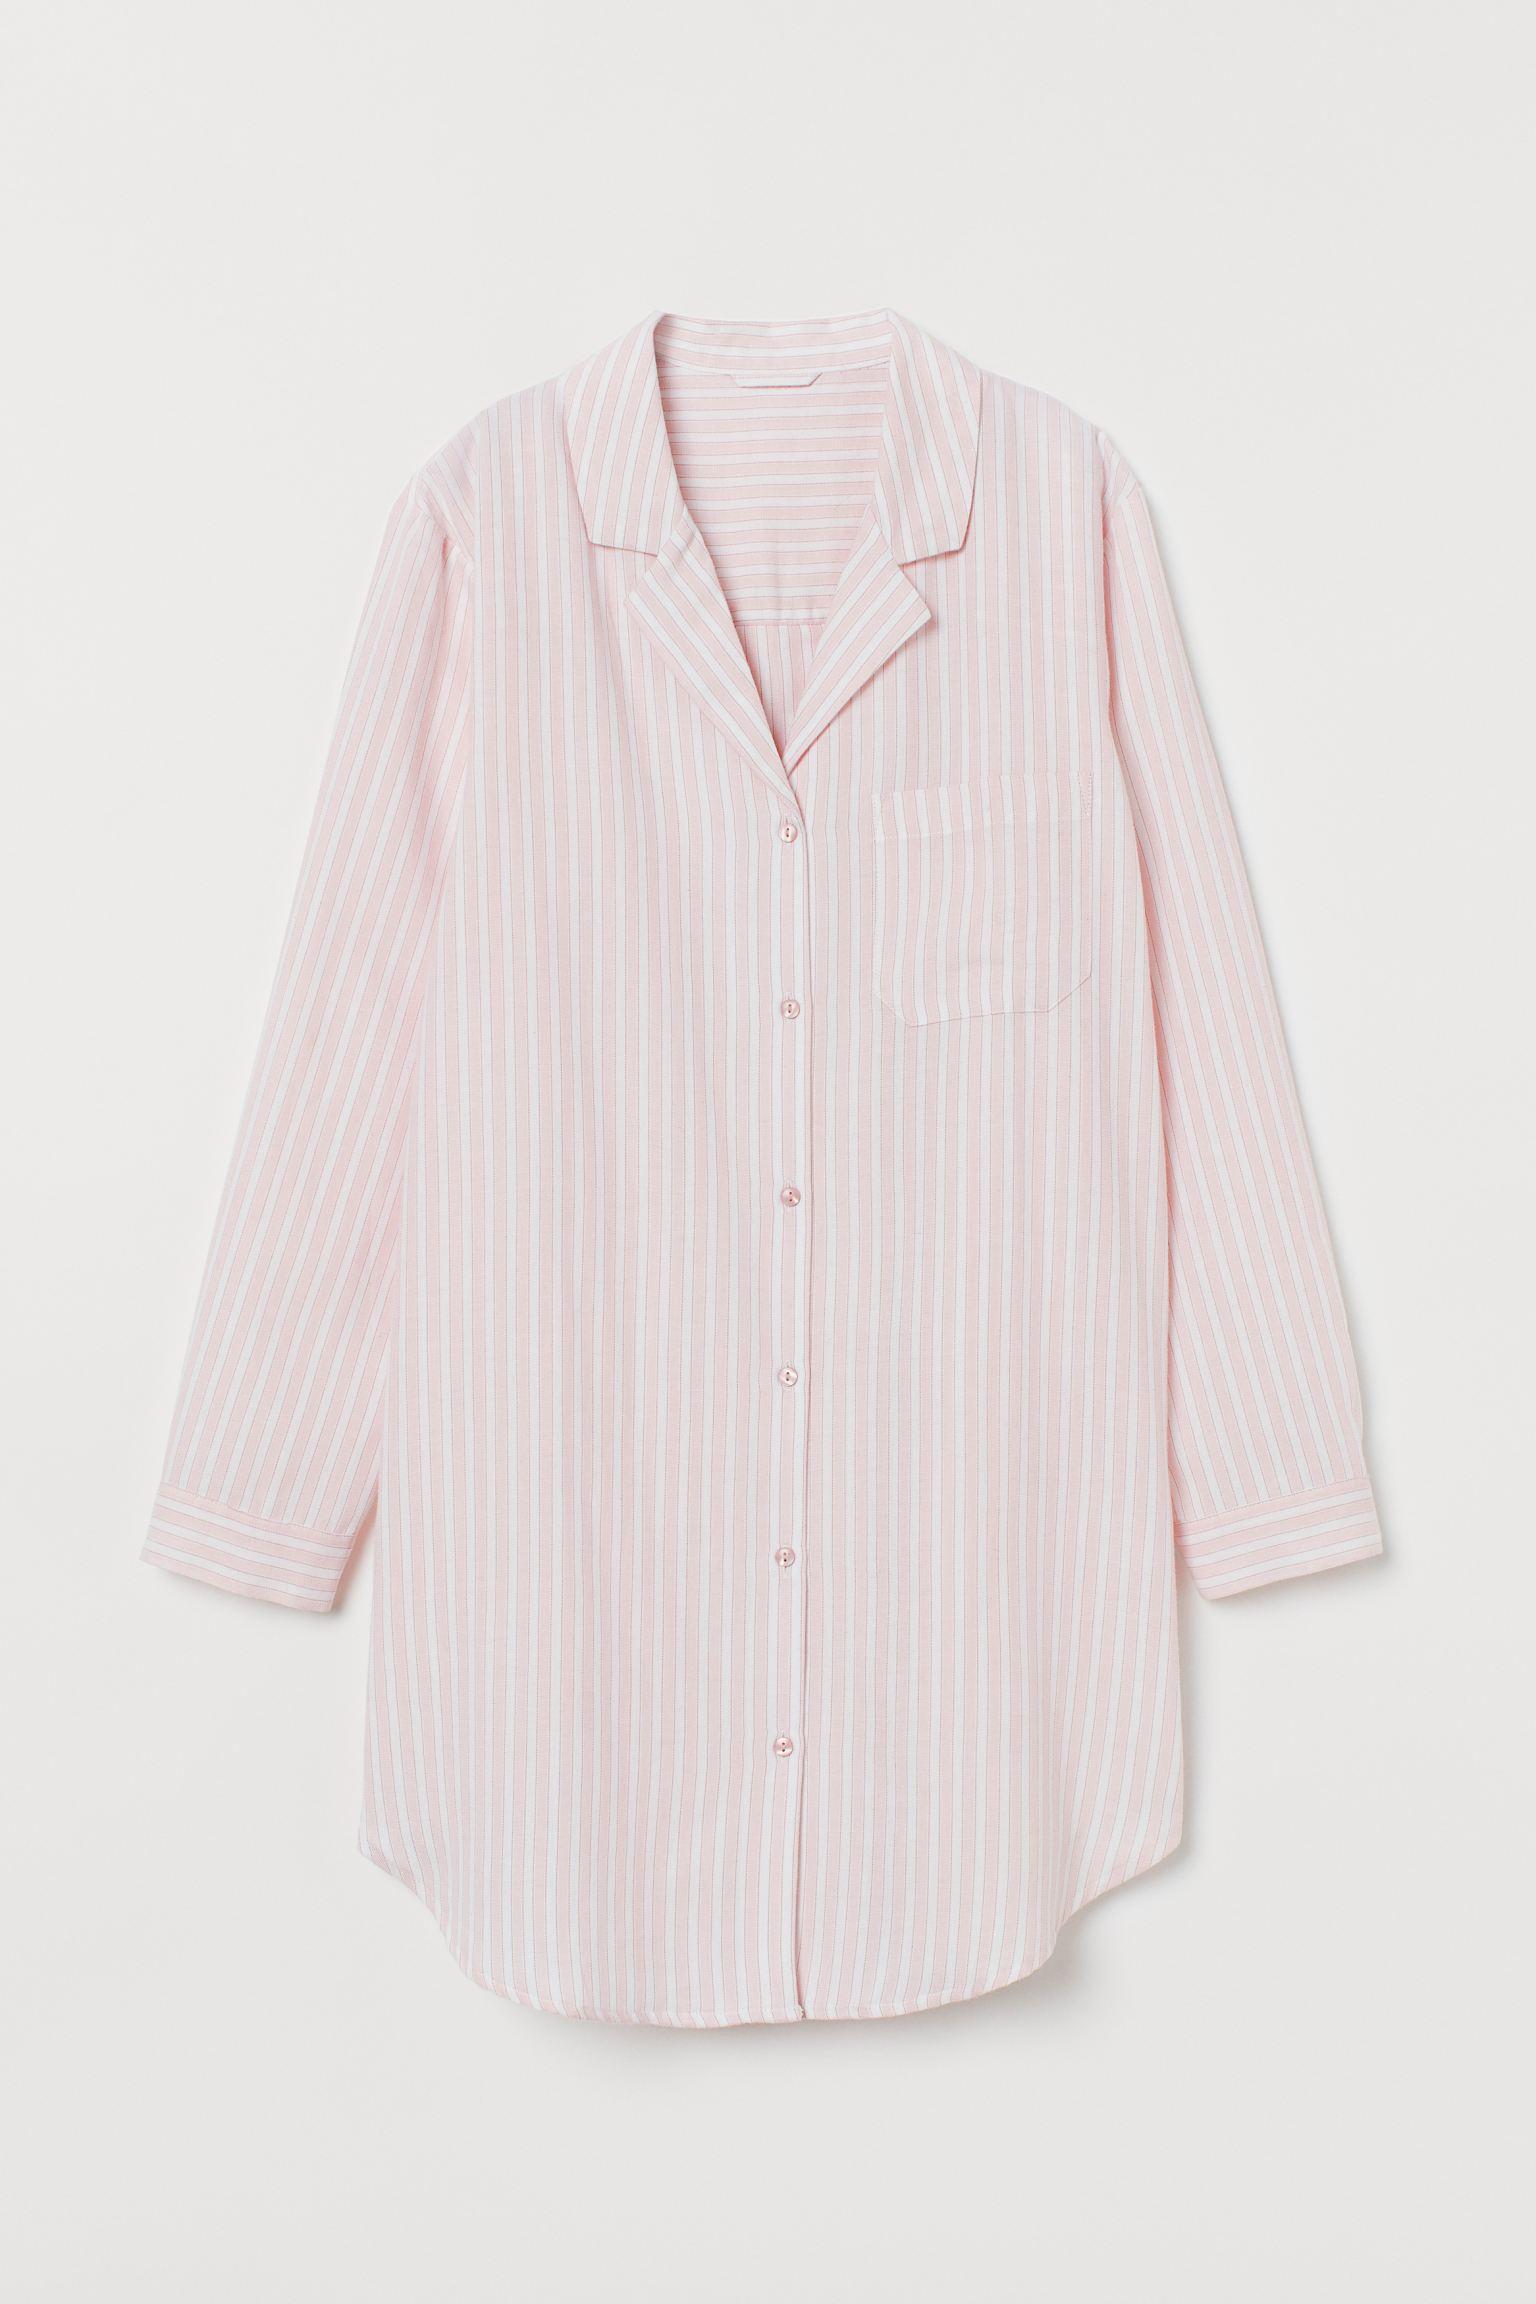 Отзыв на Ночная рубашка с Фланель из Интернет-Магазина H&M